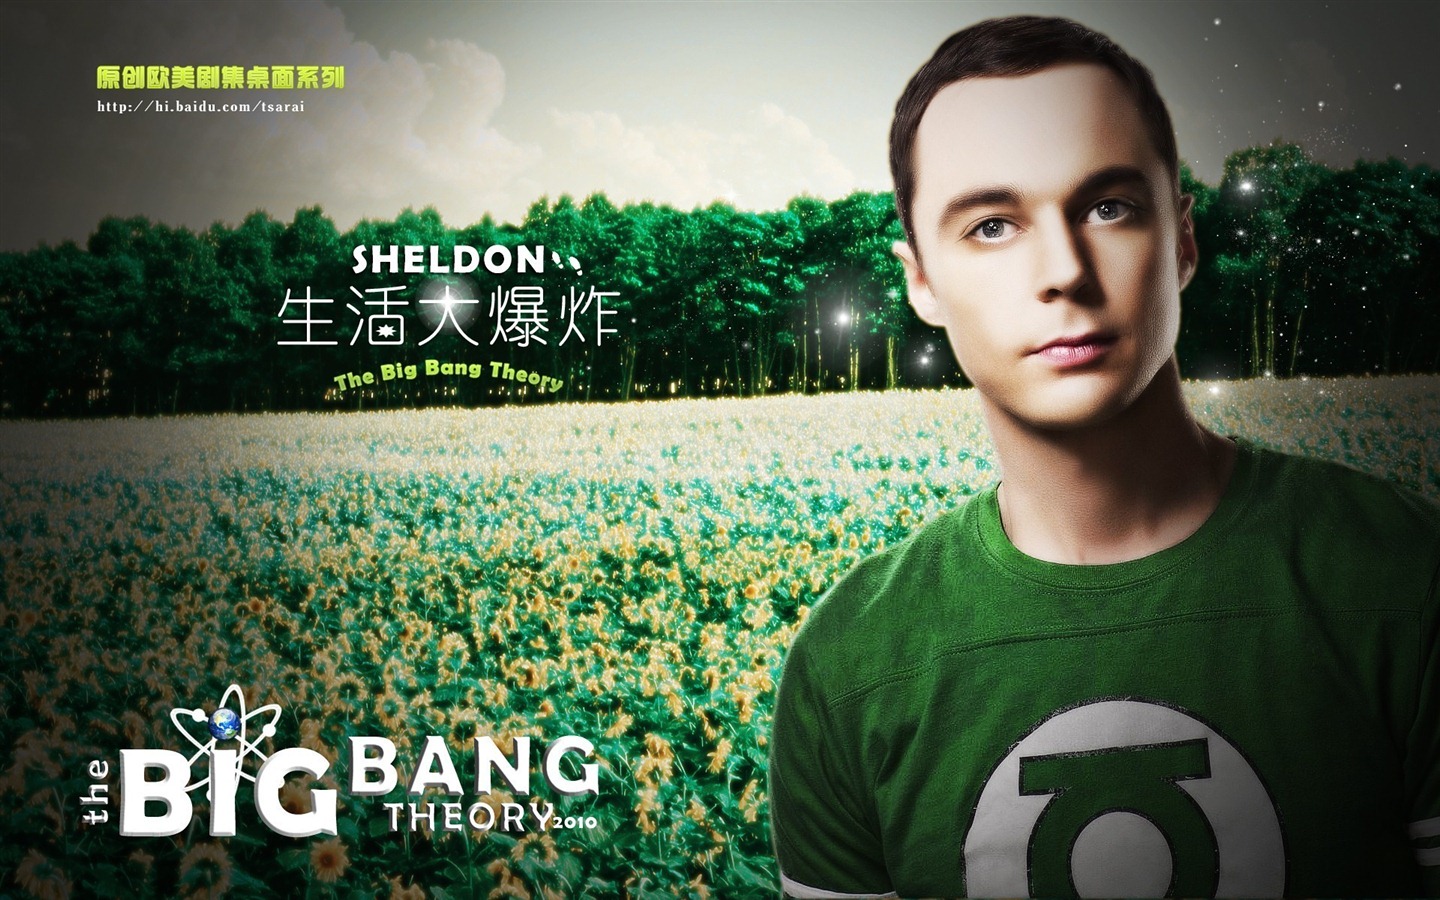 The Big Bang Theory 生活大爆炸 电视剧高清壁纸16 - 1440x900